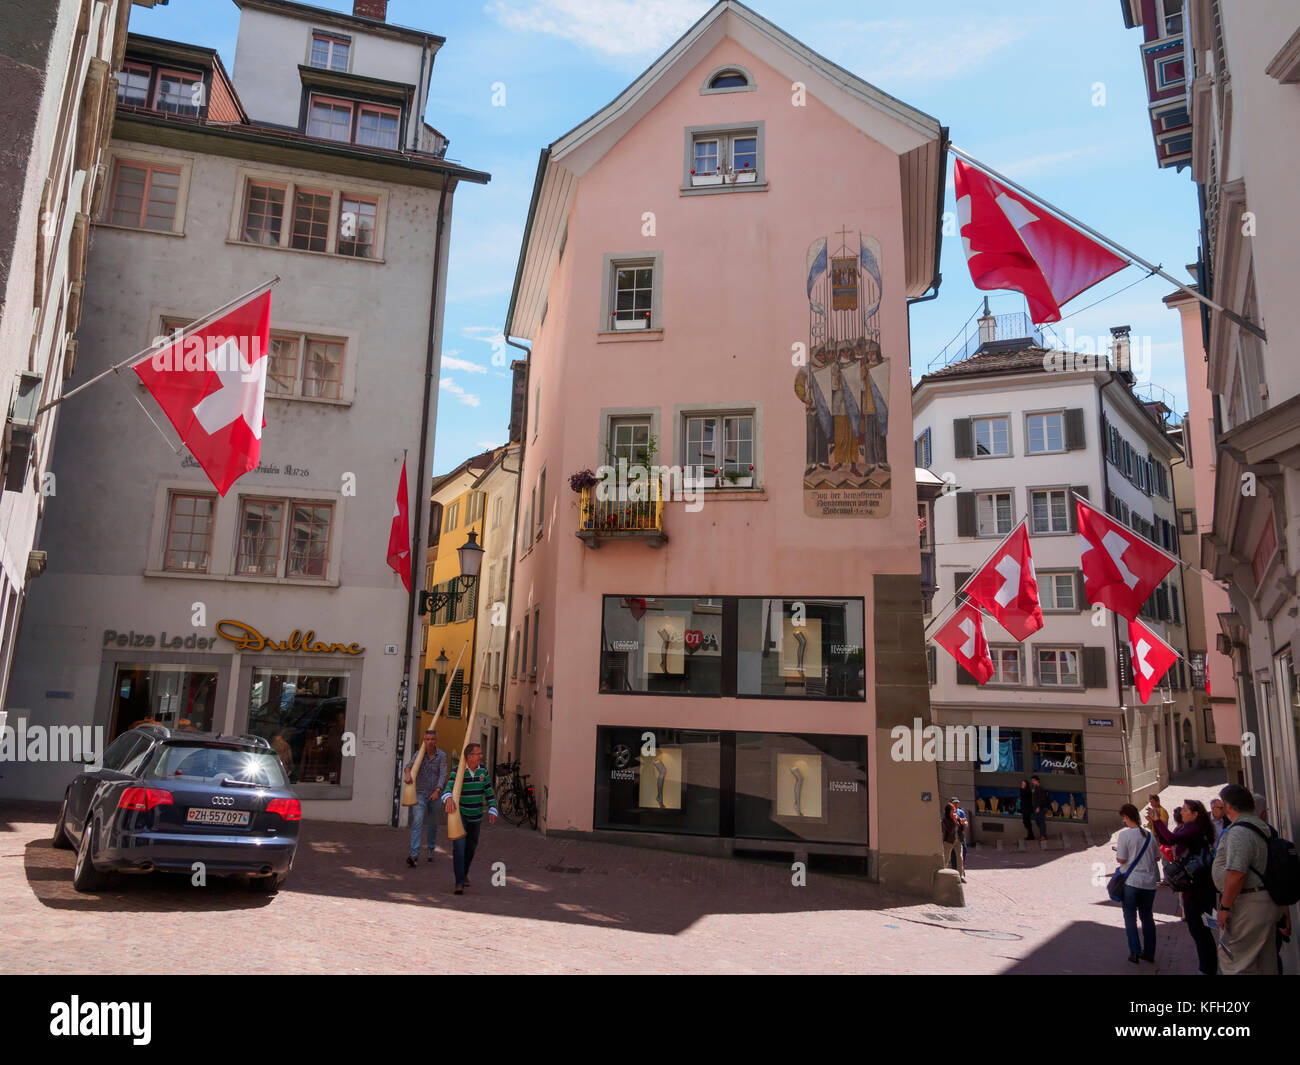 Musicians with alpenhorns on a street corner in Zurich, Switzerland Stock Photo